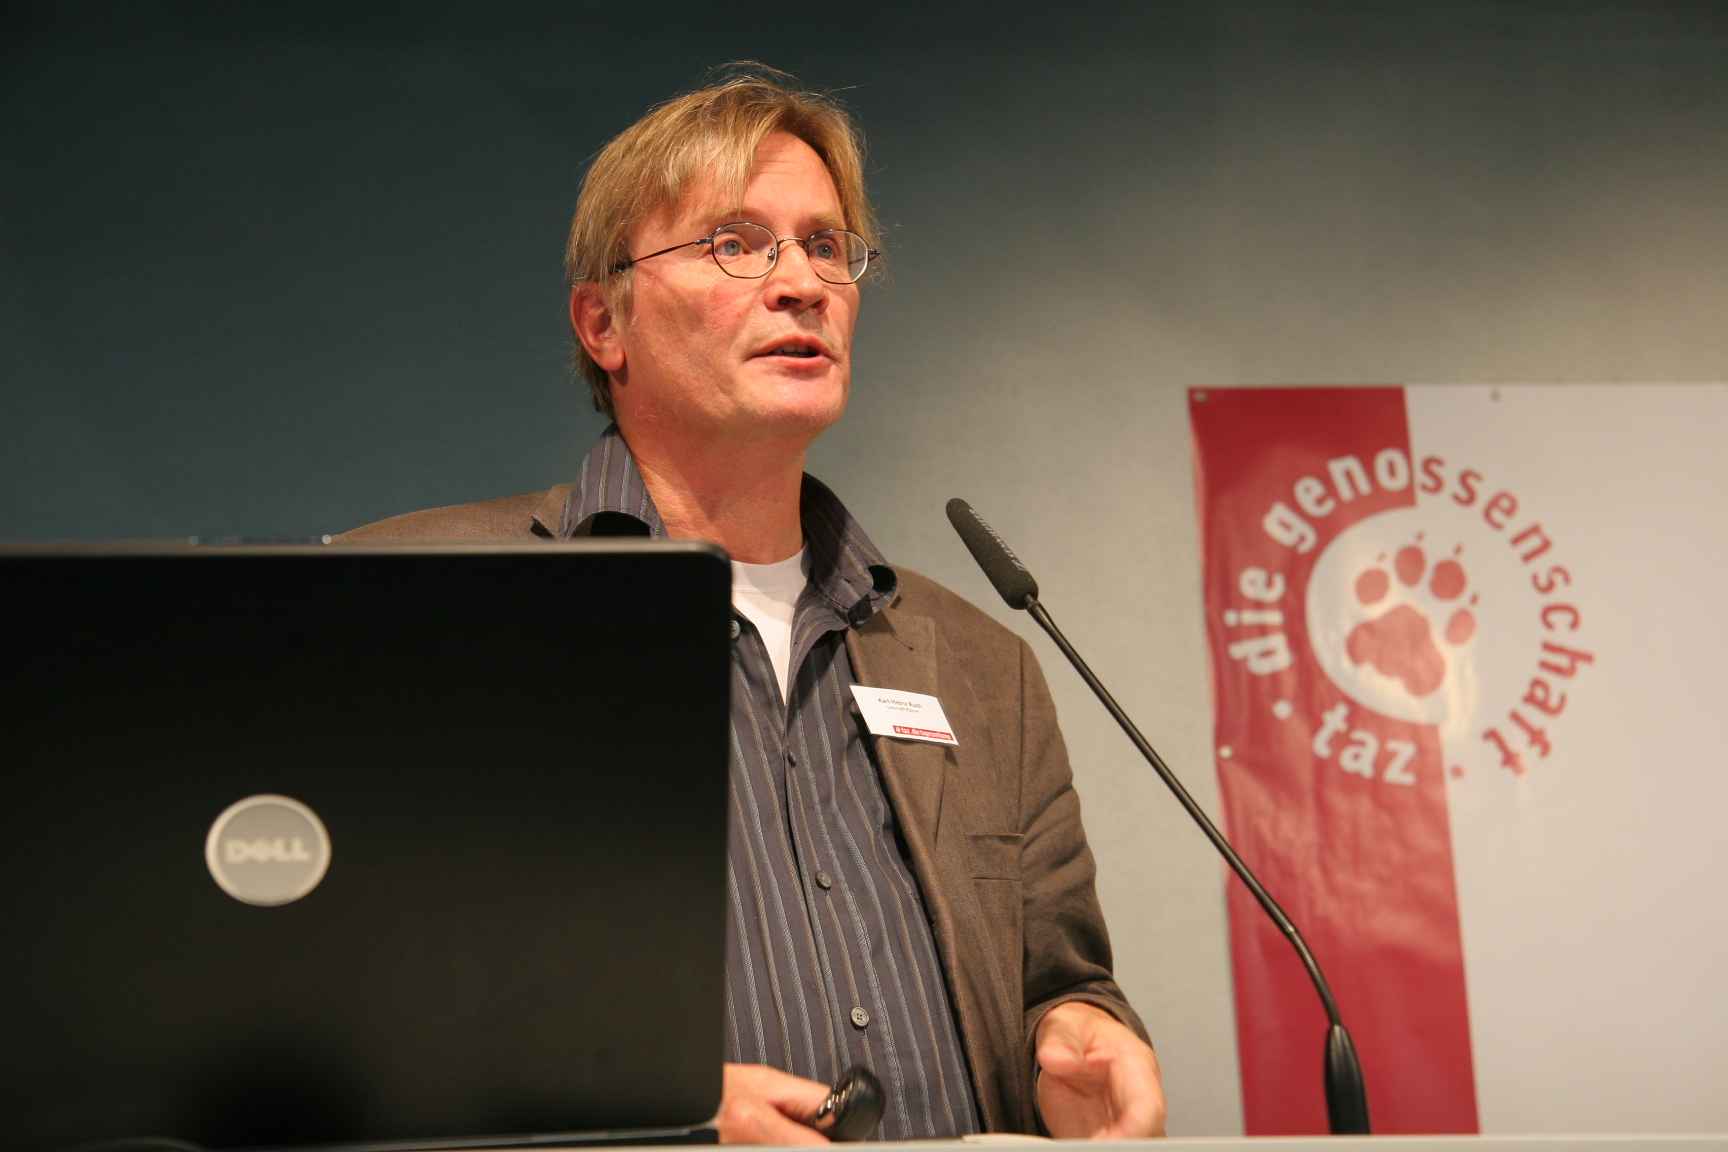 Karl-Heinz Ruch tijdens een eerdere algemene ledenvergadering van Taz, in 2011. Foto: Taz.